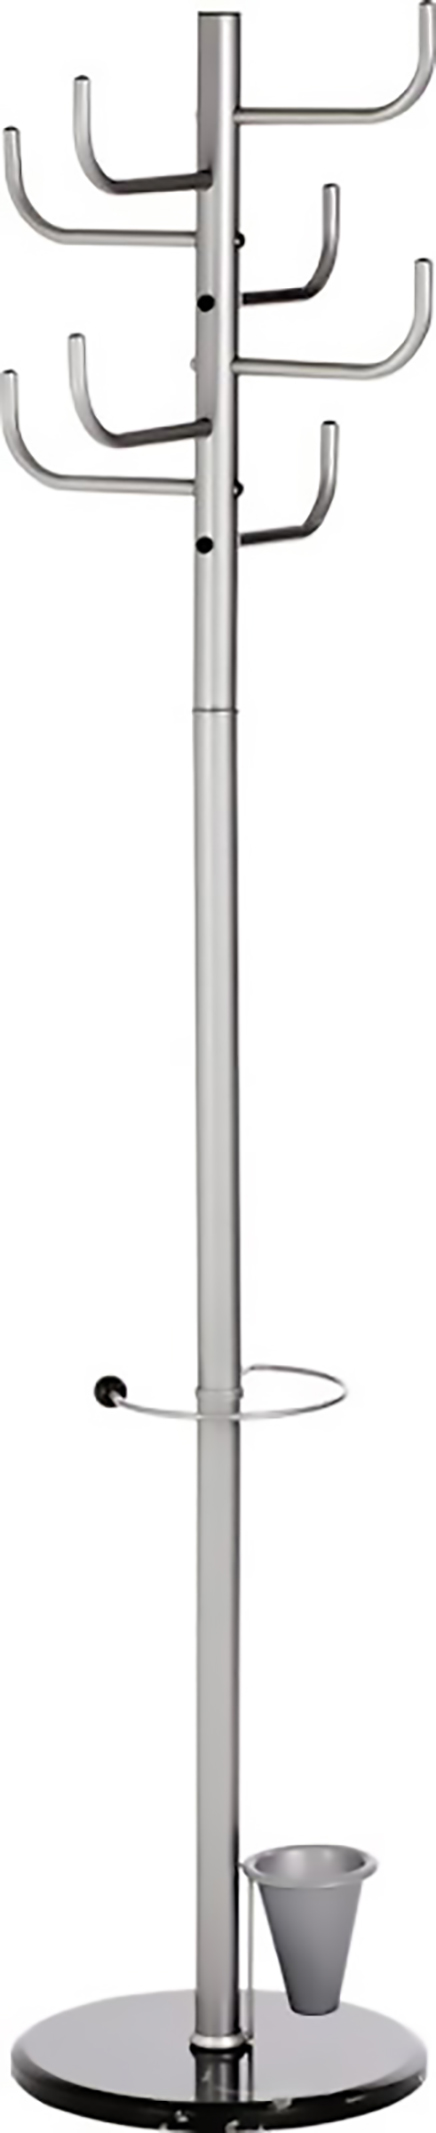 Alco Porte-Manteaux hauteur 172cm avec 8 crochets en métal Pic1